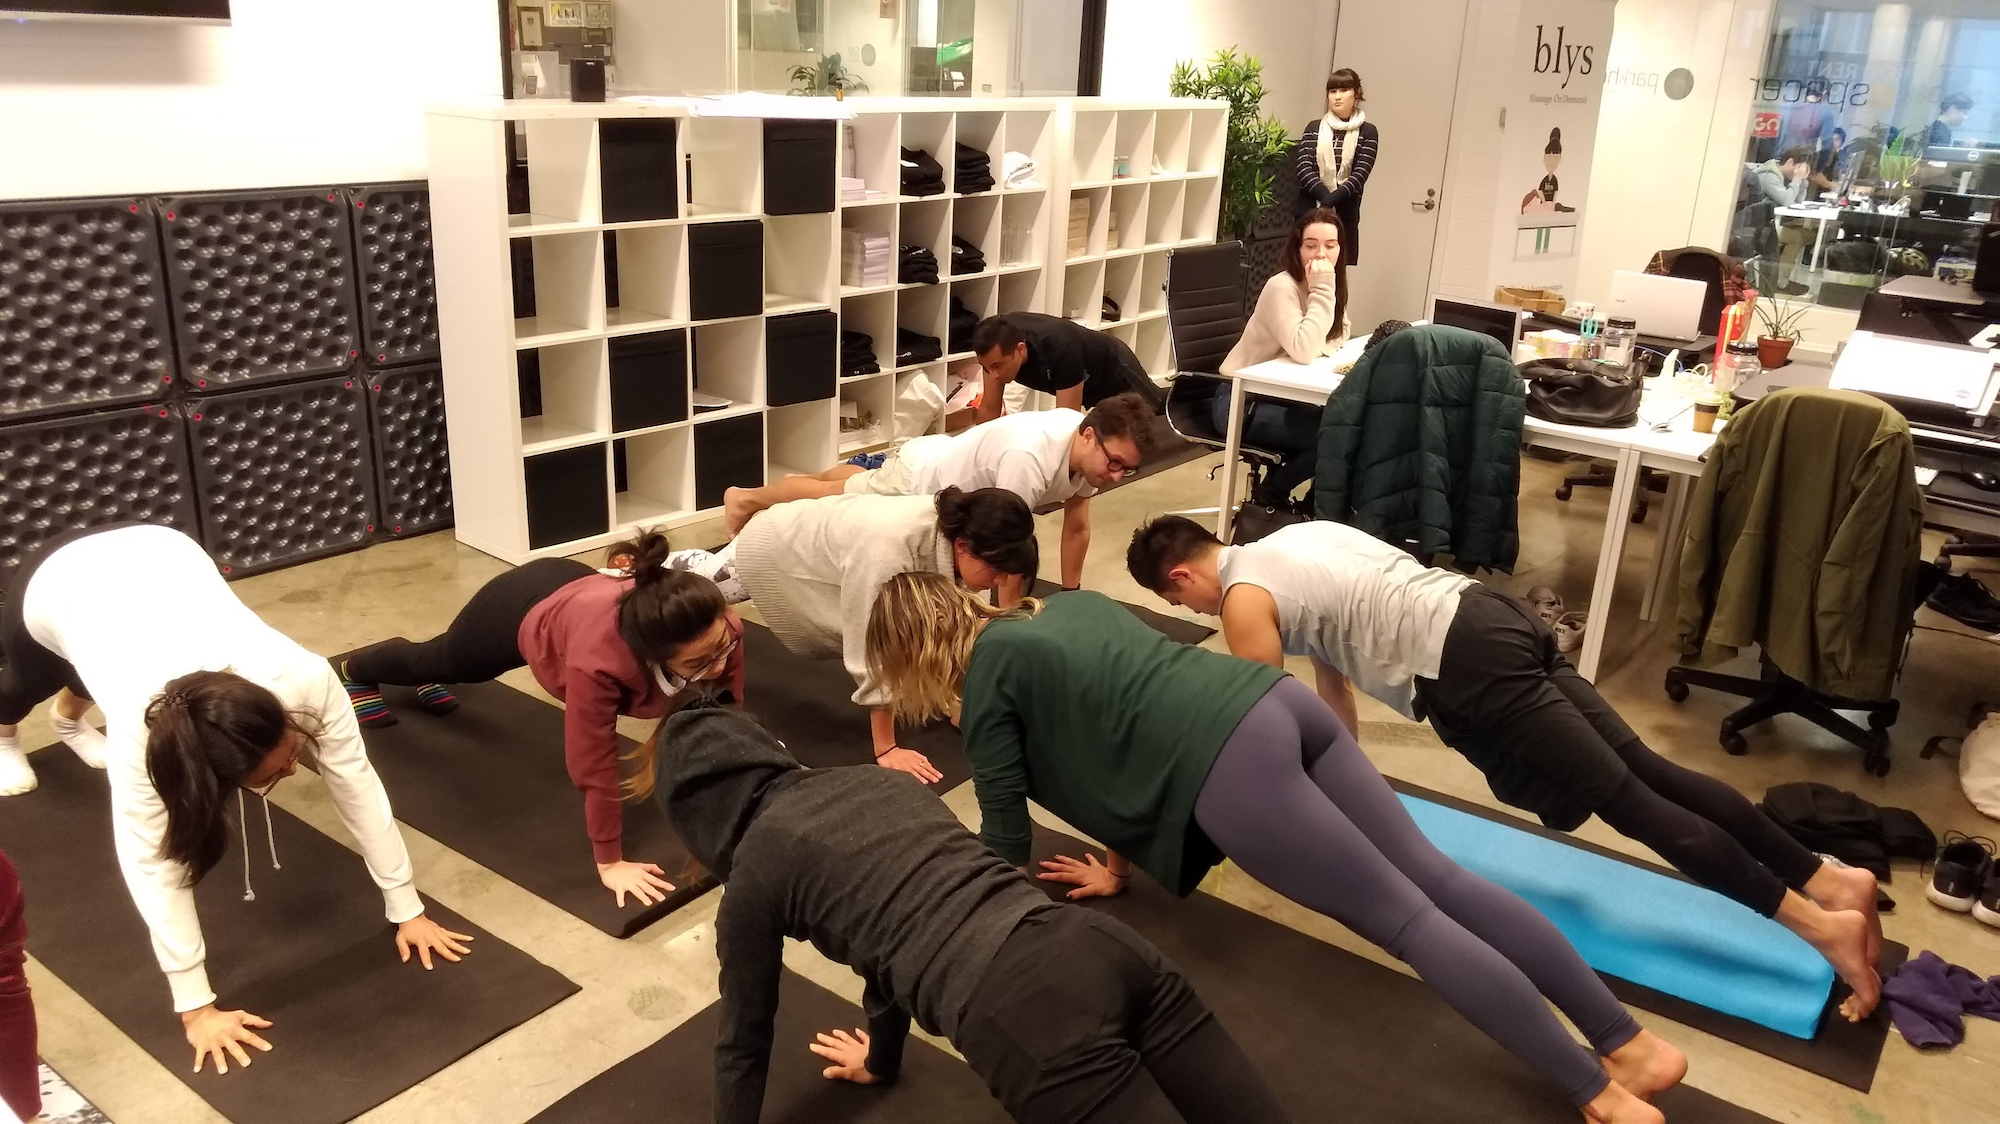 get blys mobile massage on demand Sydney yoga office team